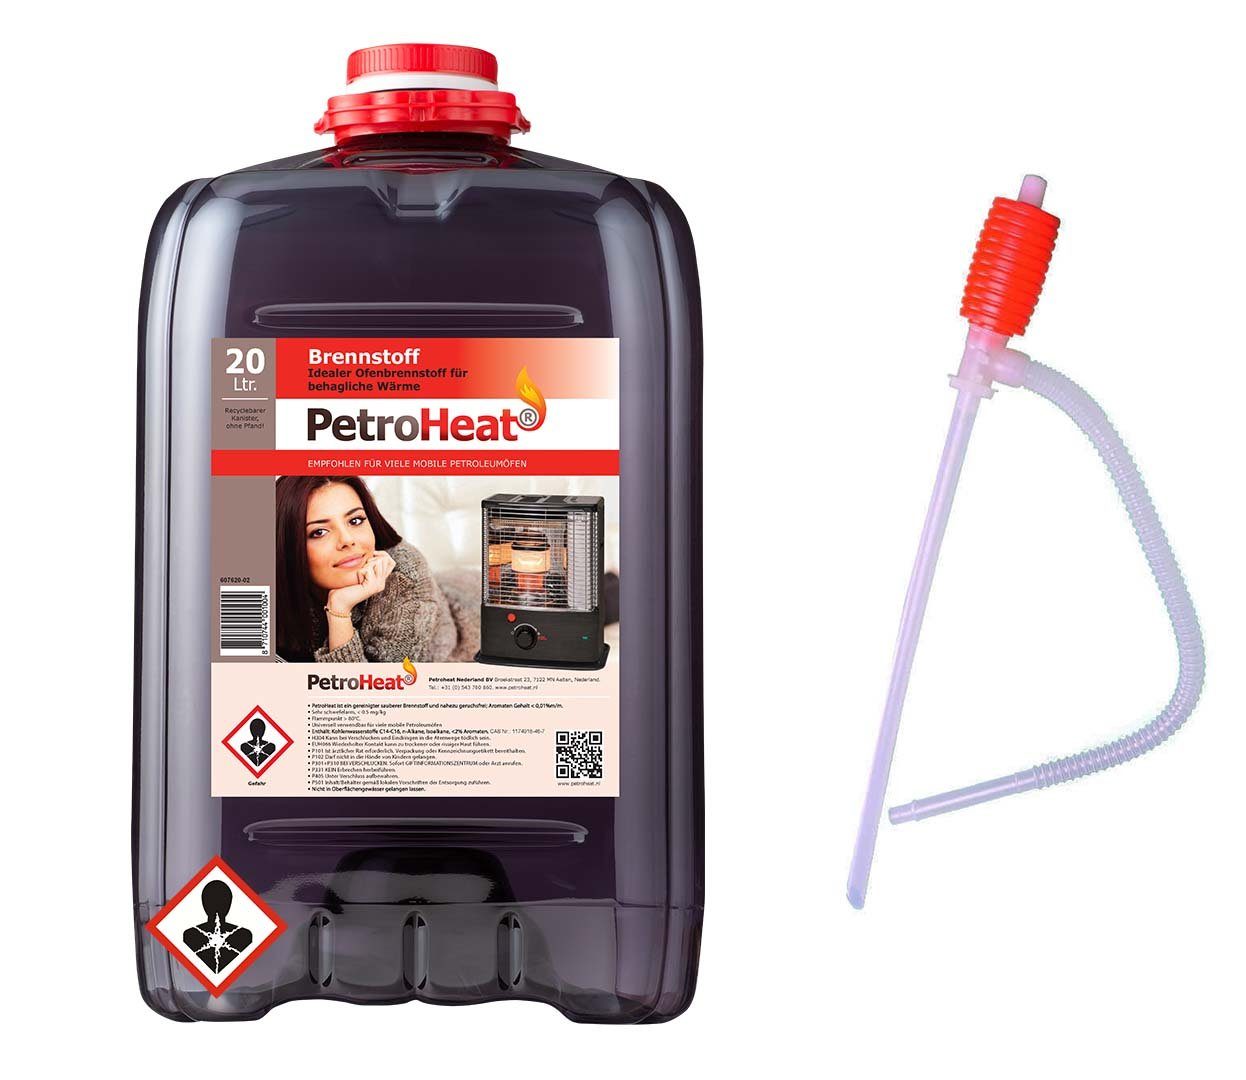 mit Petroleum Handpumpe, für Petroleumofen, Brennstoff gerusarm Liter für 20 Petroleum-Heizung, mobile Petroleumöfen PetroHeat